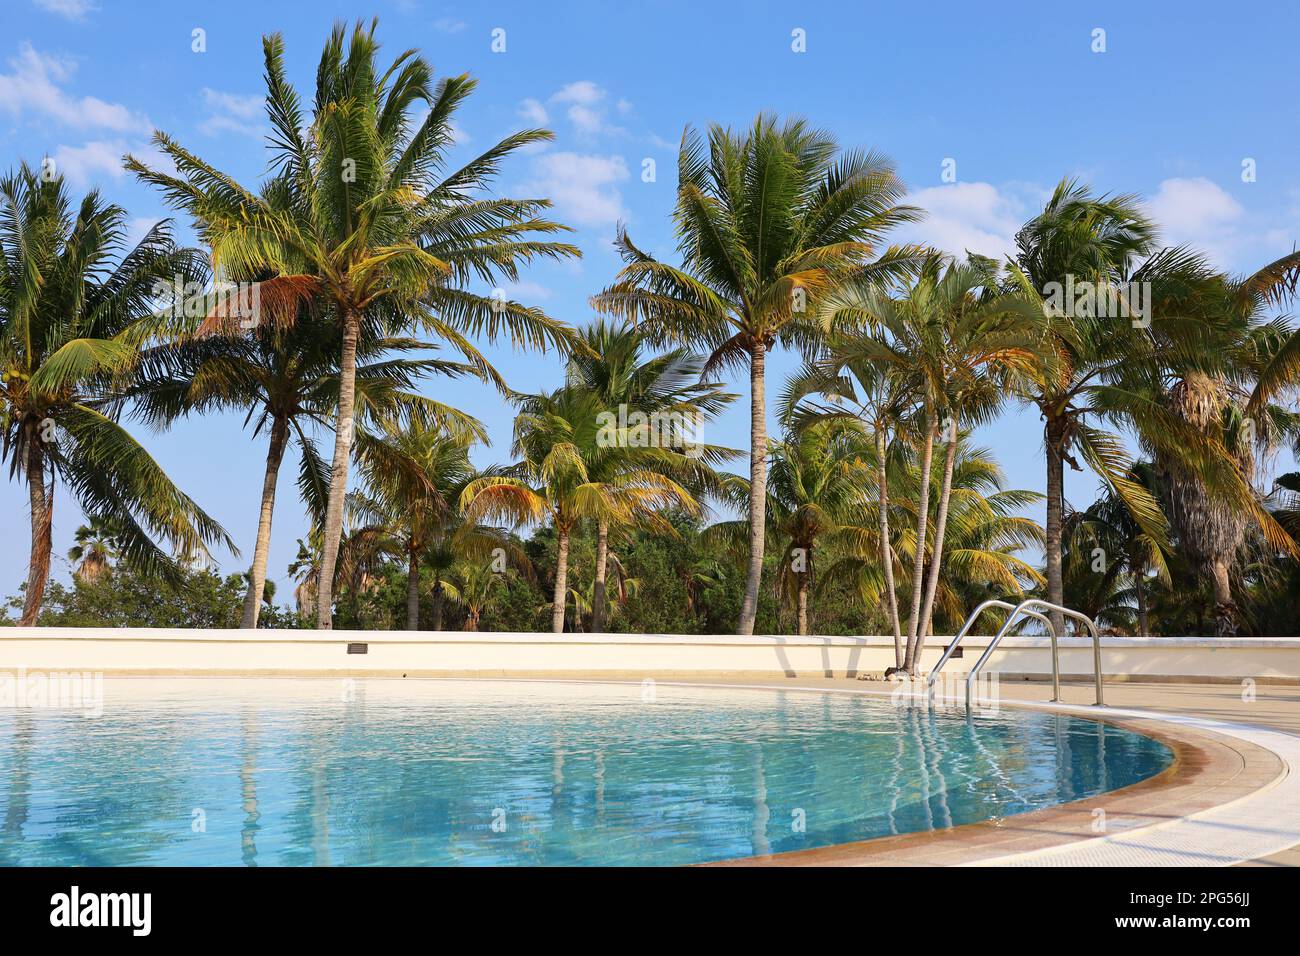 Vue sur la piscine et les palmiers à noix de coco. Vacances sur la plage sur l'île tropicale Banque D'Images